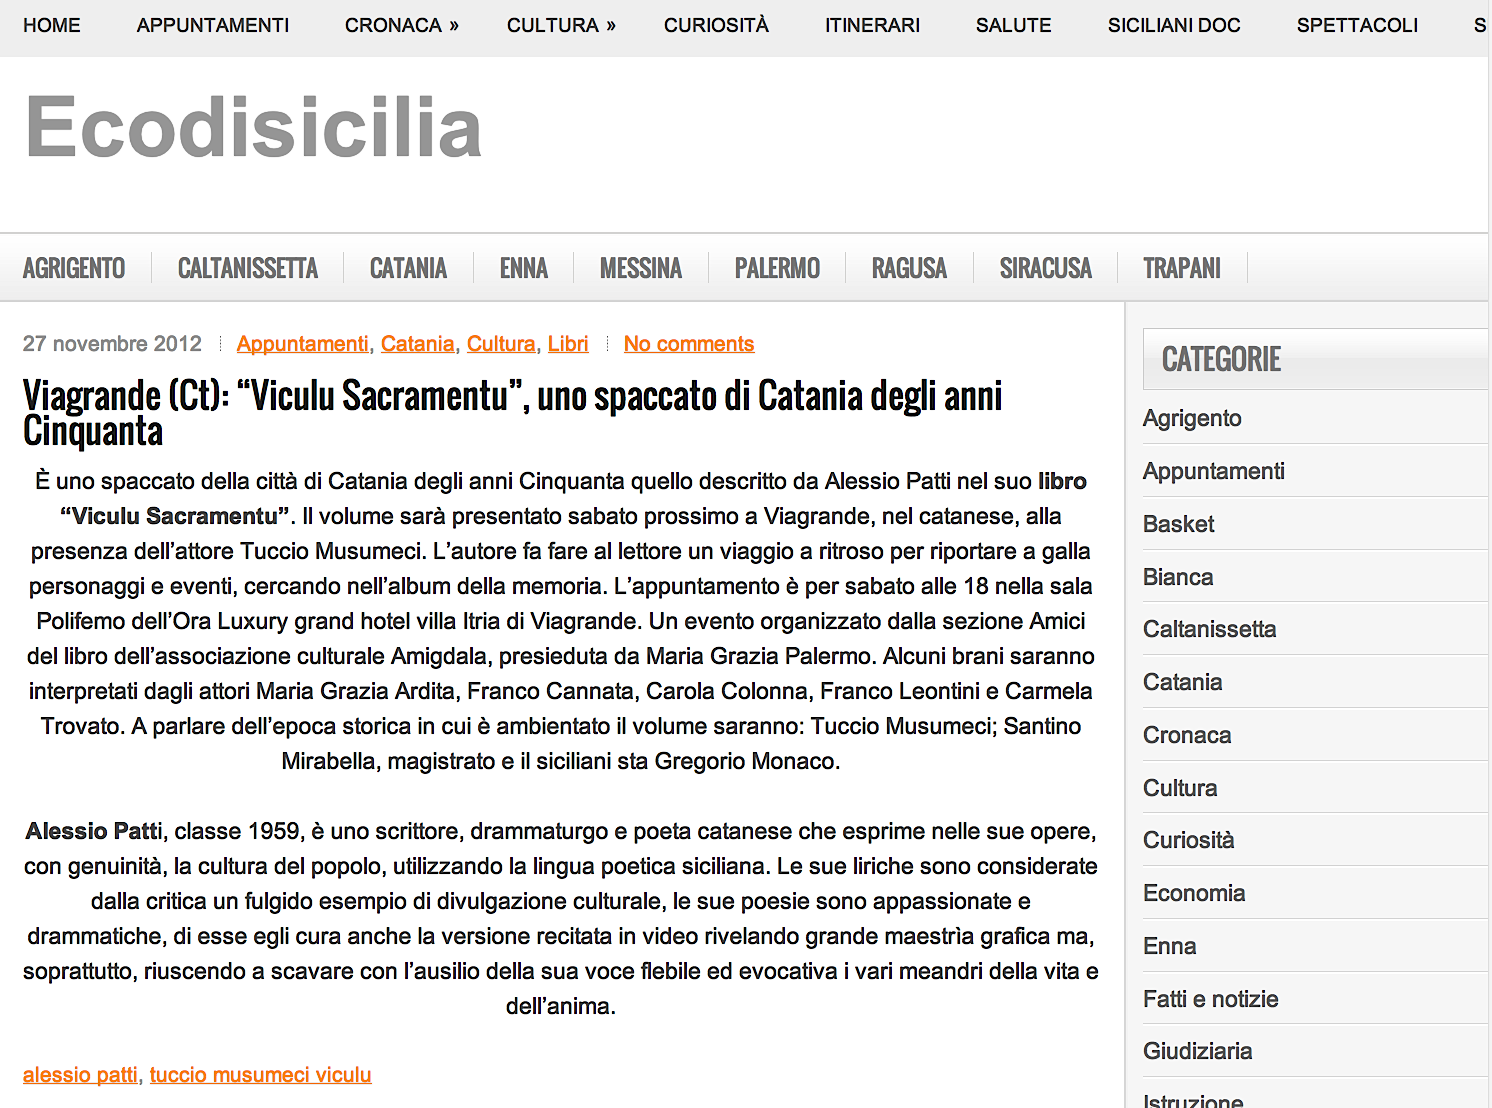 Viagrande (Ct): “Viculu Sacramentu”, uno spaccato di Catania degli anni Cinquanta